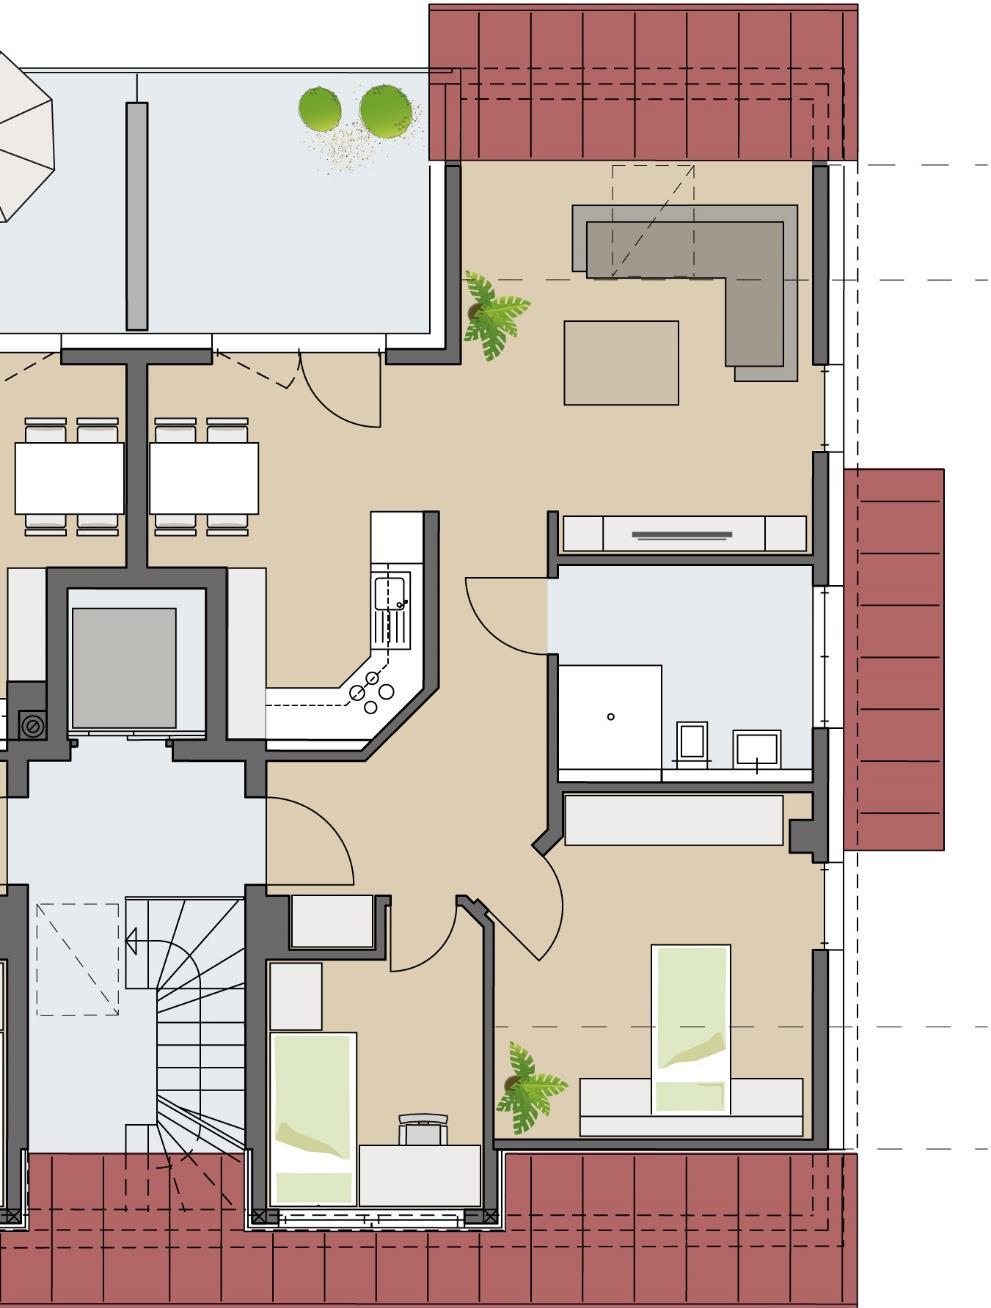 75,7 m² Wohnfläche (Brutto) ) Nicht barrierefreie Möblierungsvariante: Wohnen 7,5 m² Bodengleiche Dusche 11,4 m² (13,7 m²) 7,5 m²